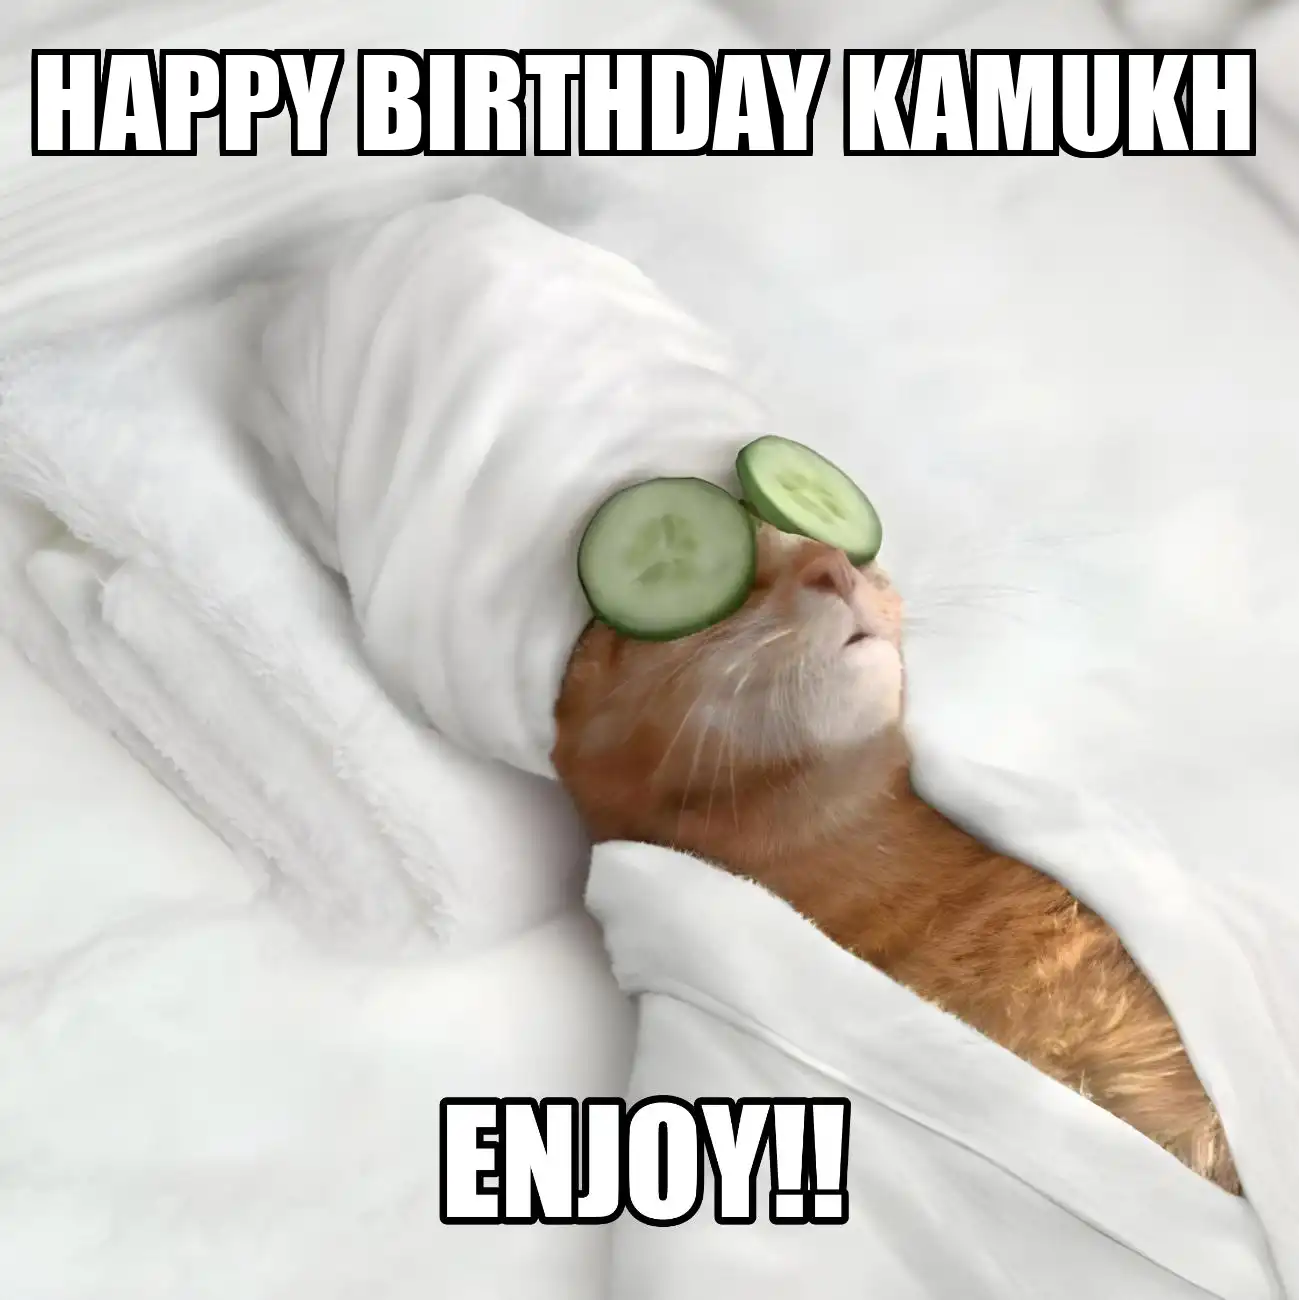 Happy Birthday Kamukh Enjoy Cat Meme